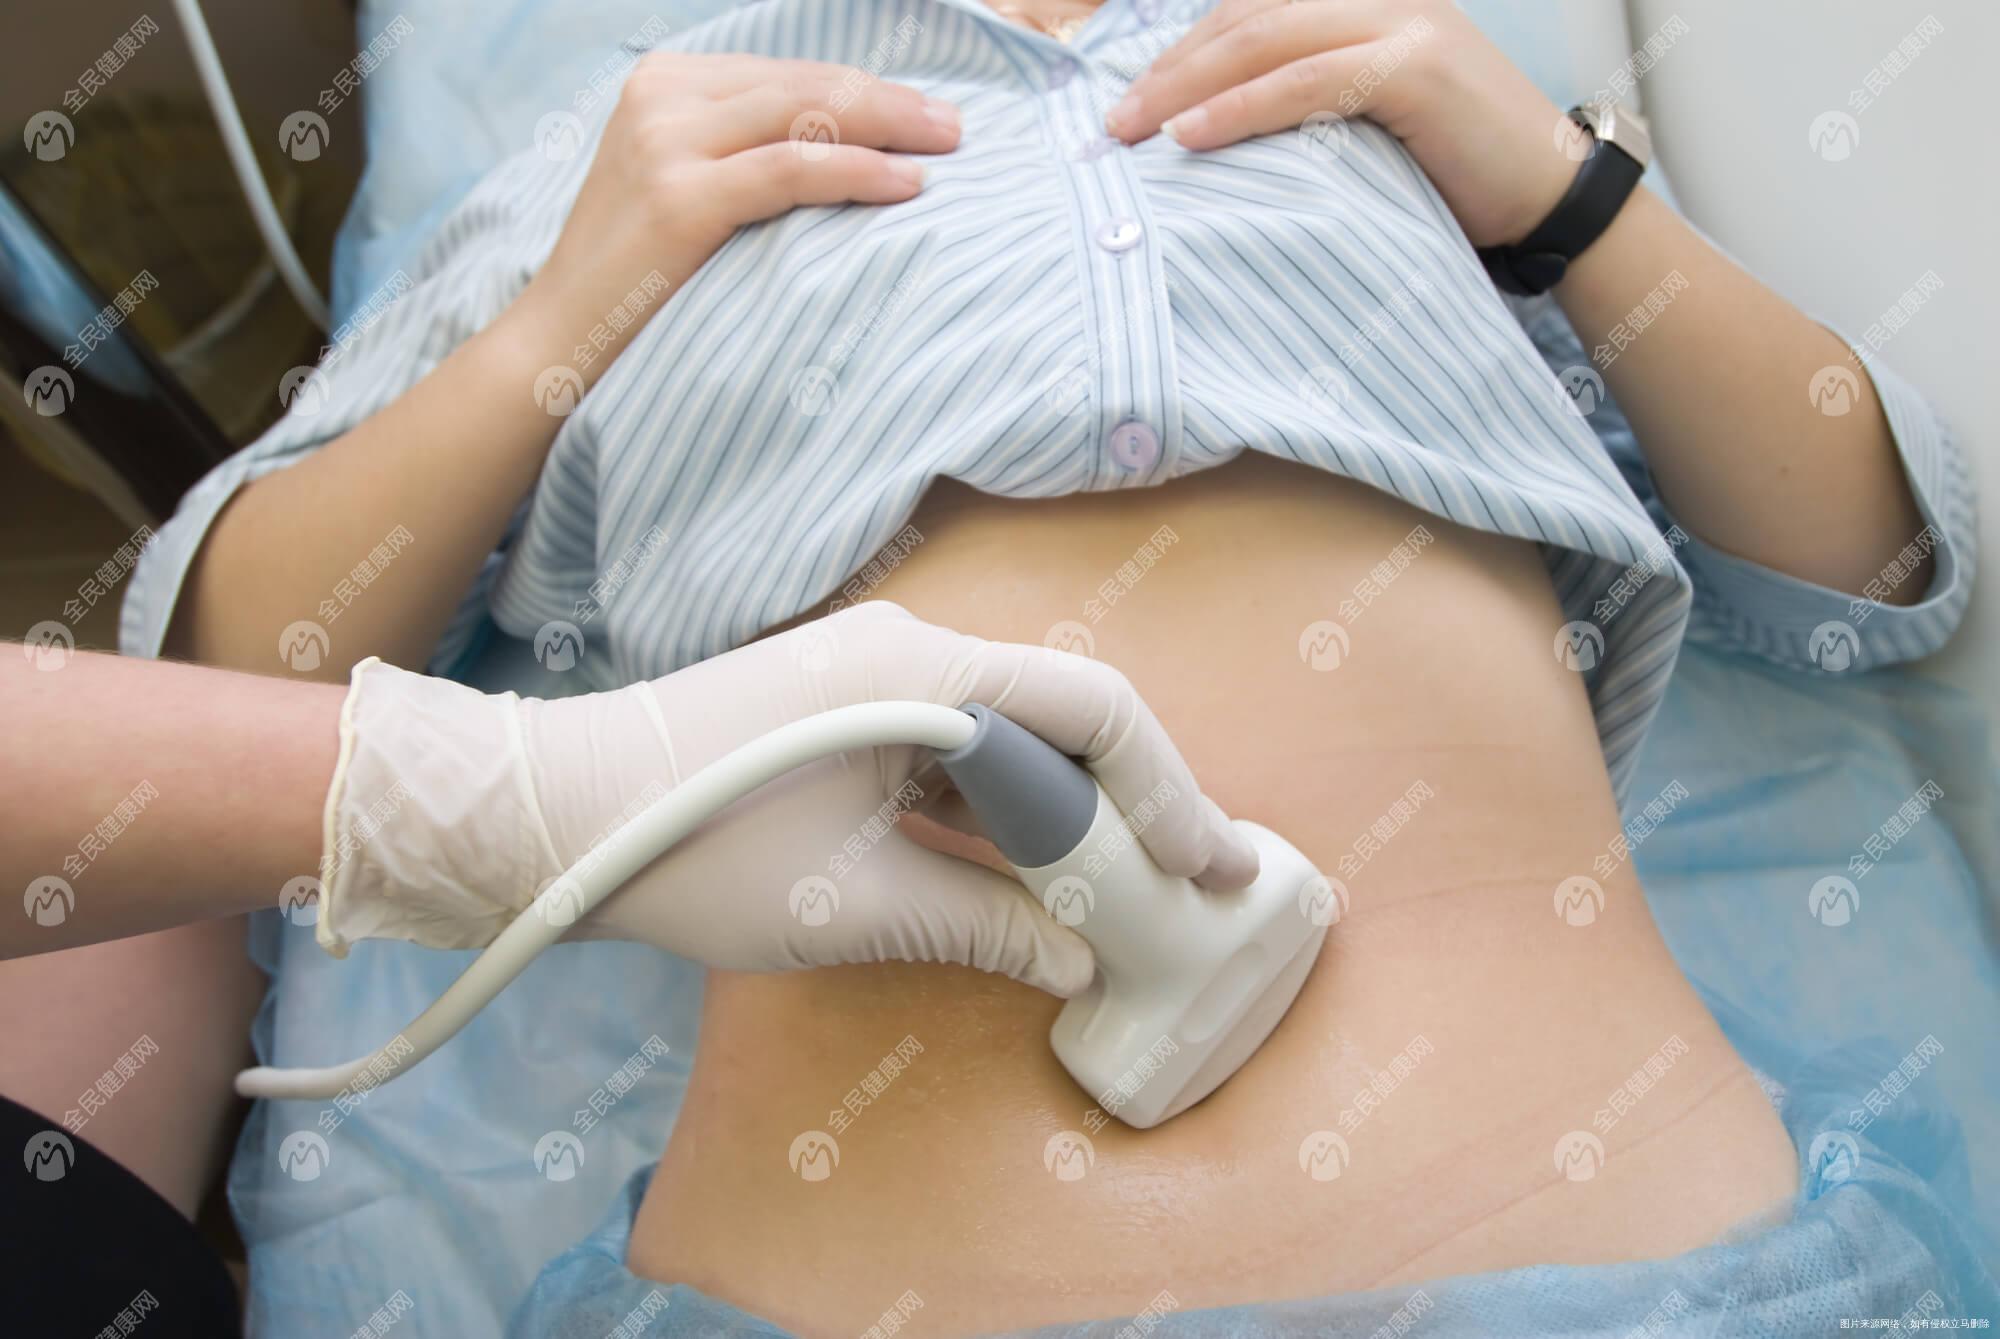 厦门妇幼保健院做三代试管婴儿的流程是怎么样的?厦门妇幼保健院三代试管步骤有哪些?